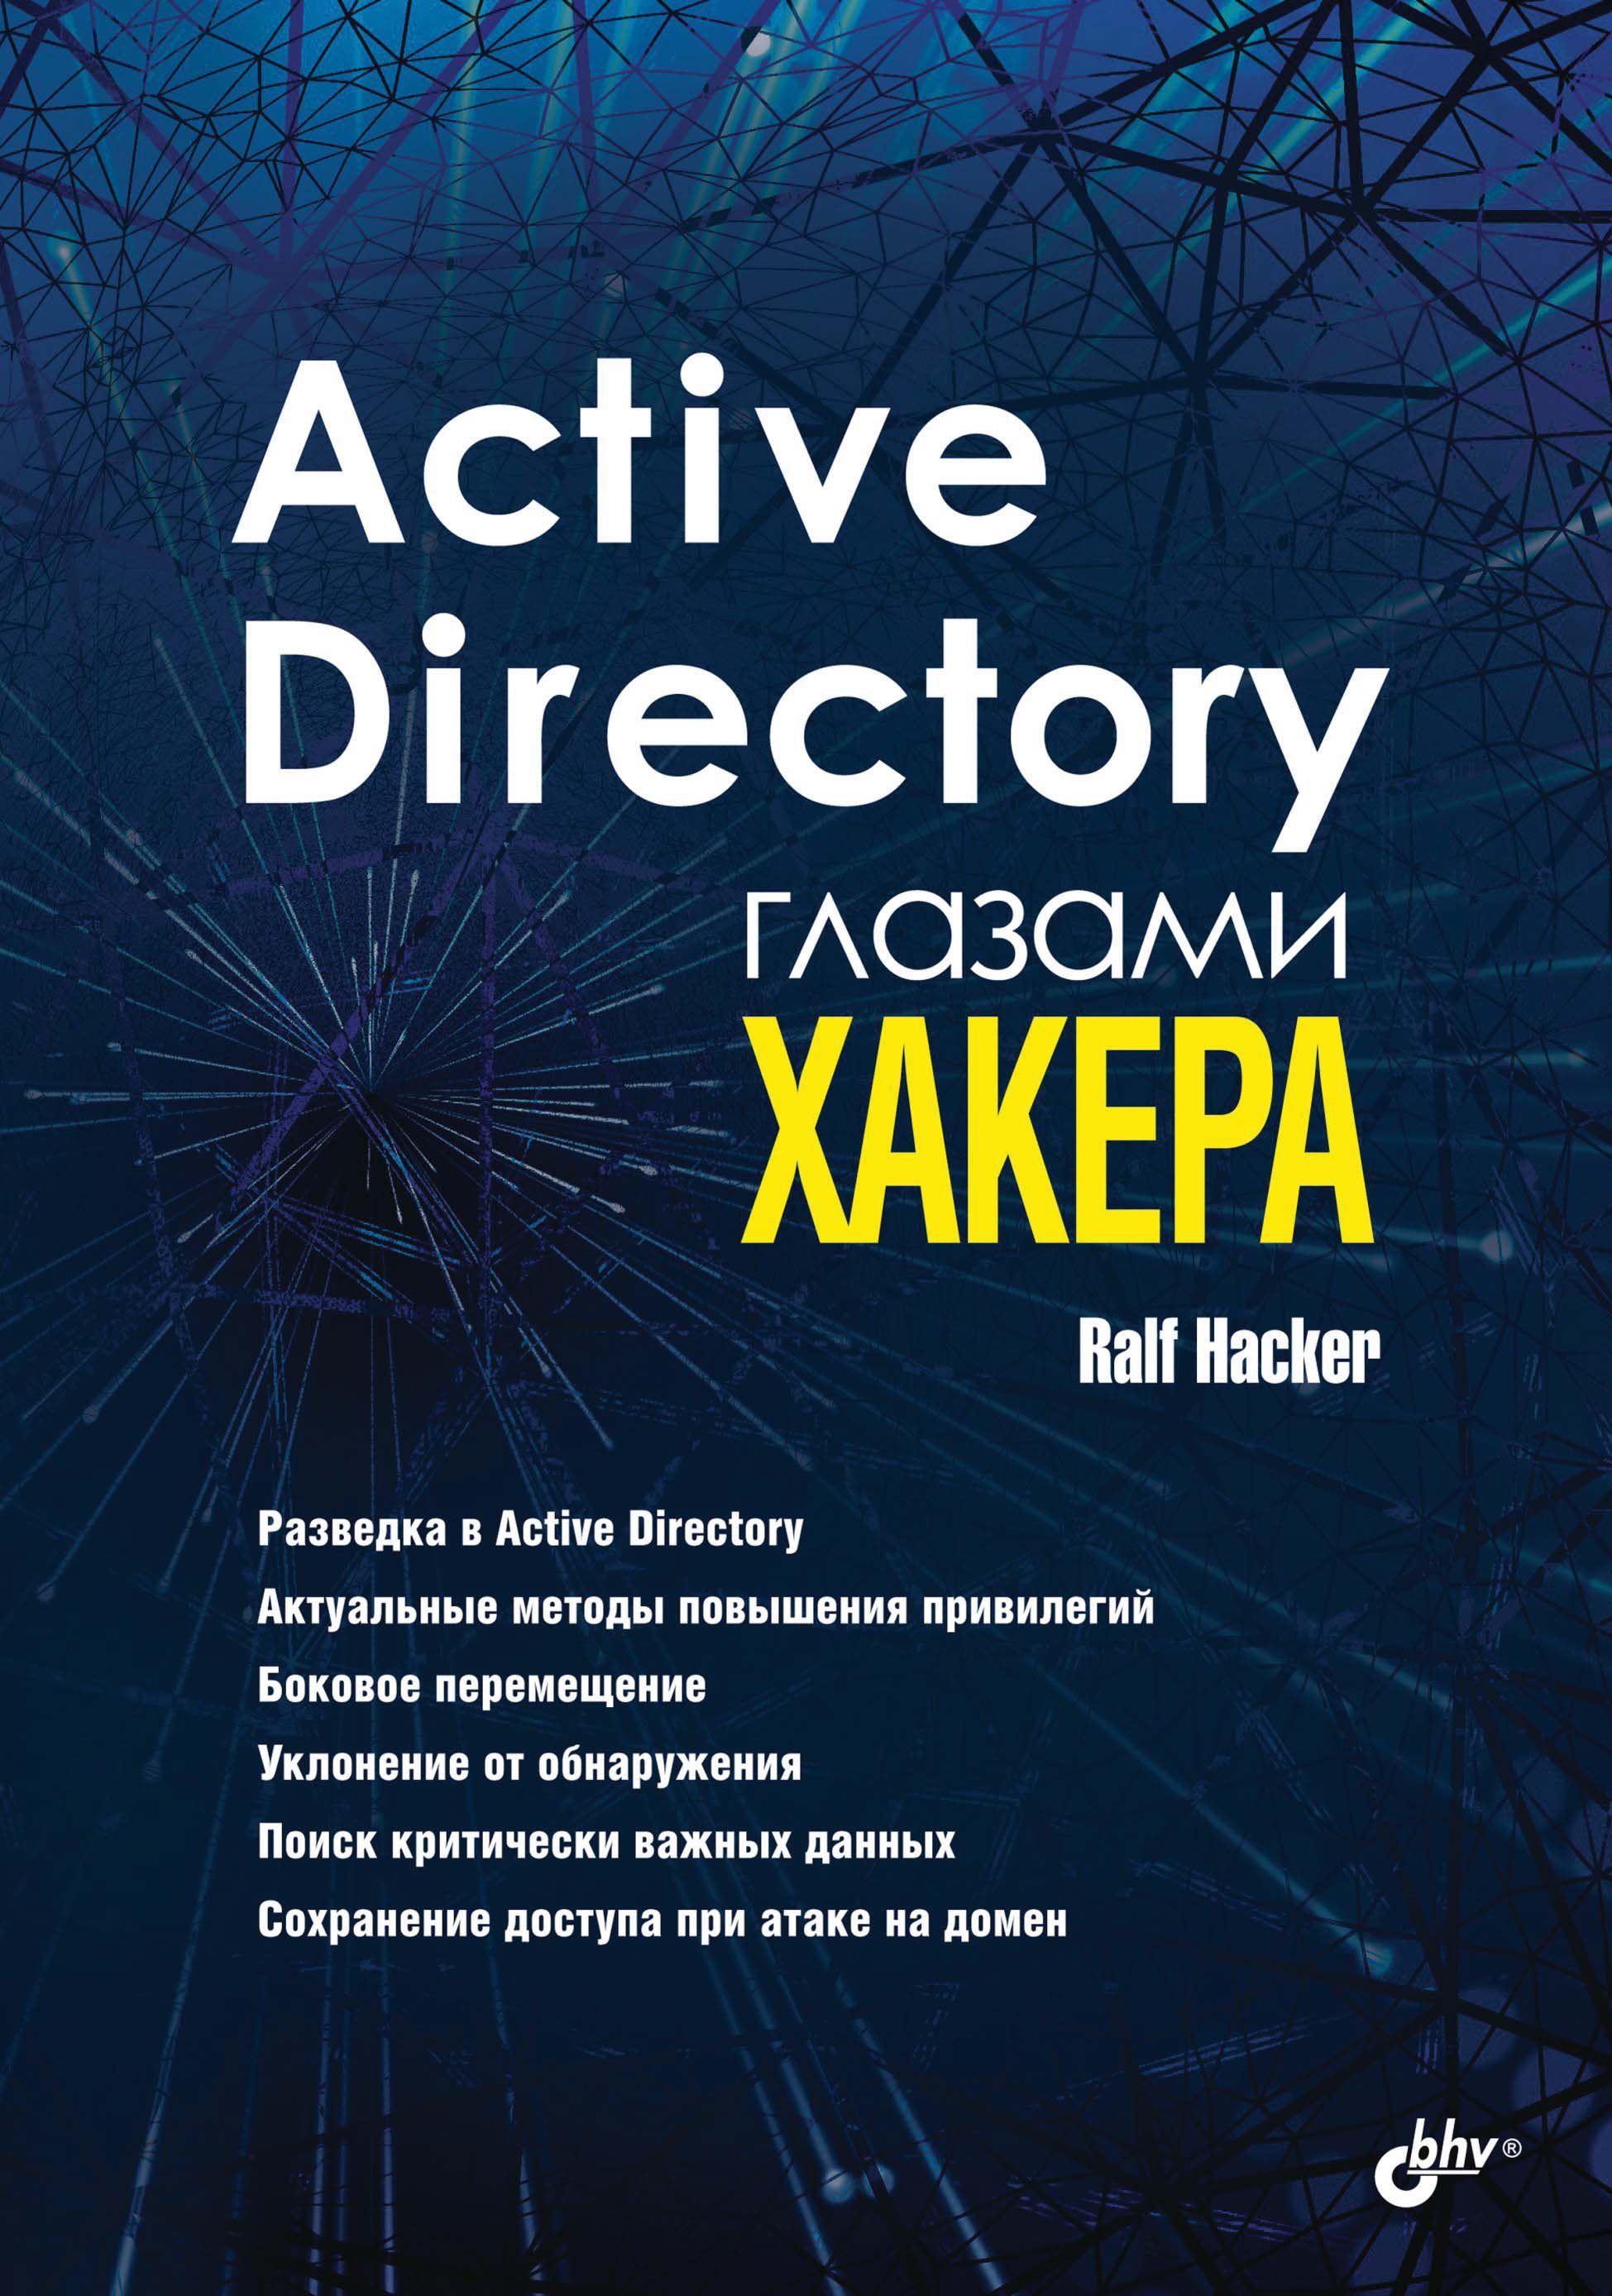 Книга Глазами хакера Active Directory глазами хакера созданная Ralf Hacker может относится к жанру информационная безопасность, ОС и сети, программы. Стоимость электронной книги Active Directory глазами хакера с идентификатором 67725516 составляет 280.00 руб.